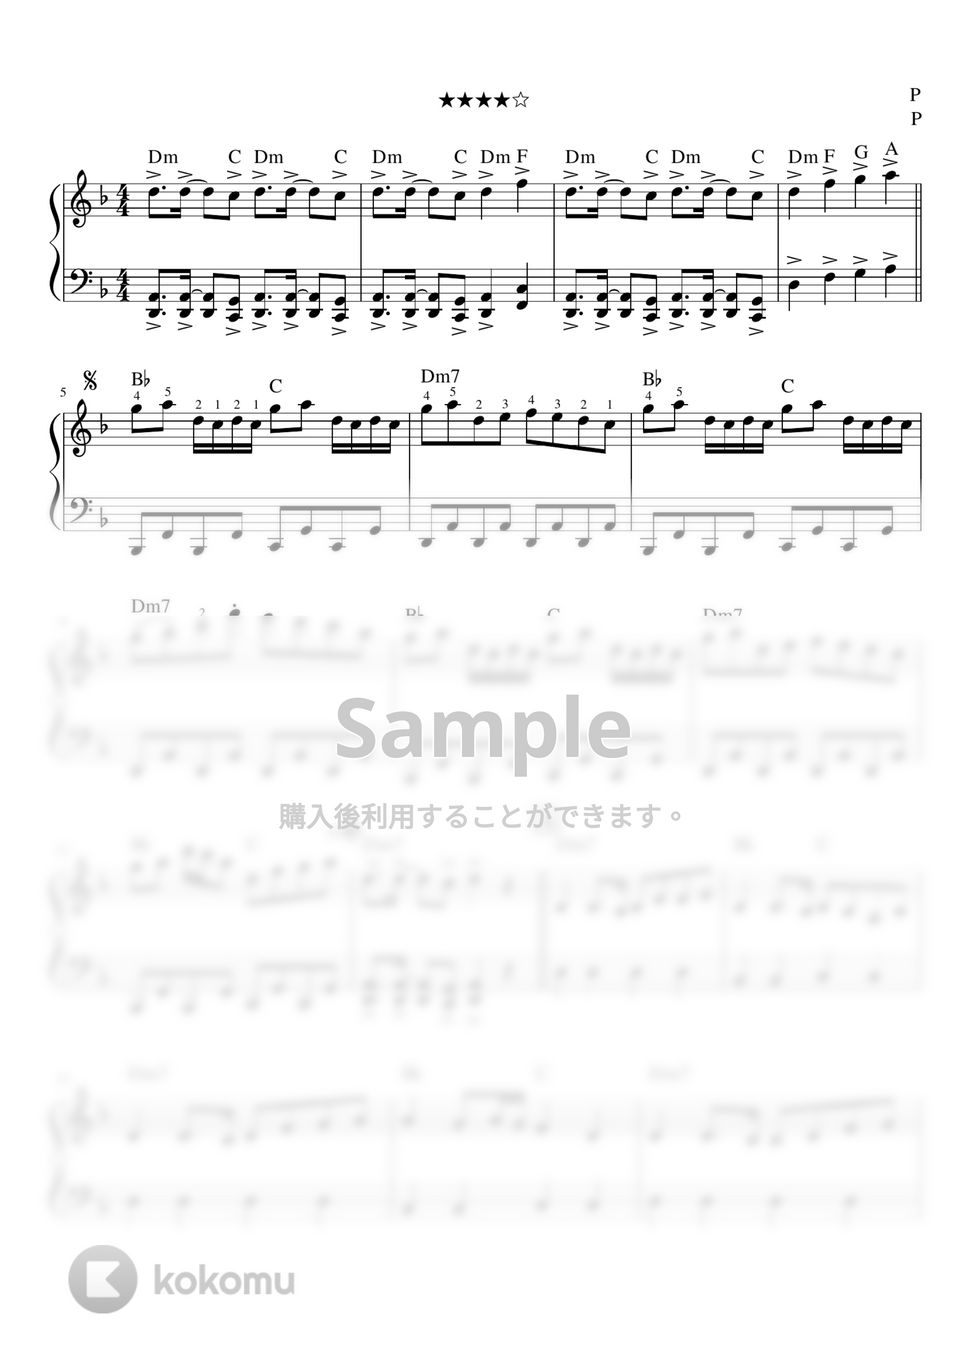 黒うさP - 千本桜 (ピアノソロ初級レッスン / コード付き) by orinpia music